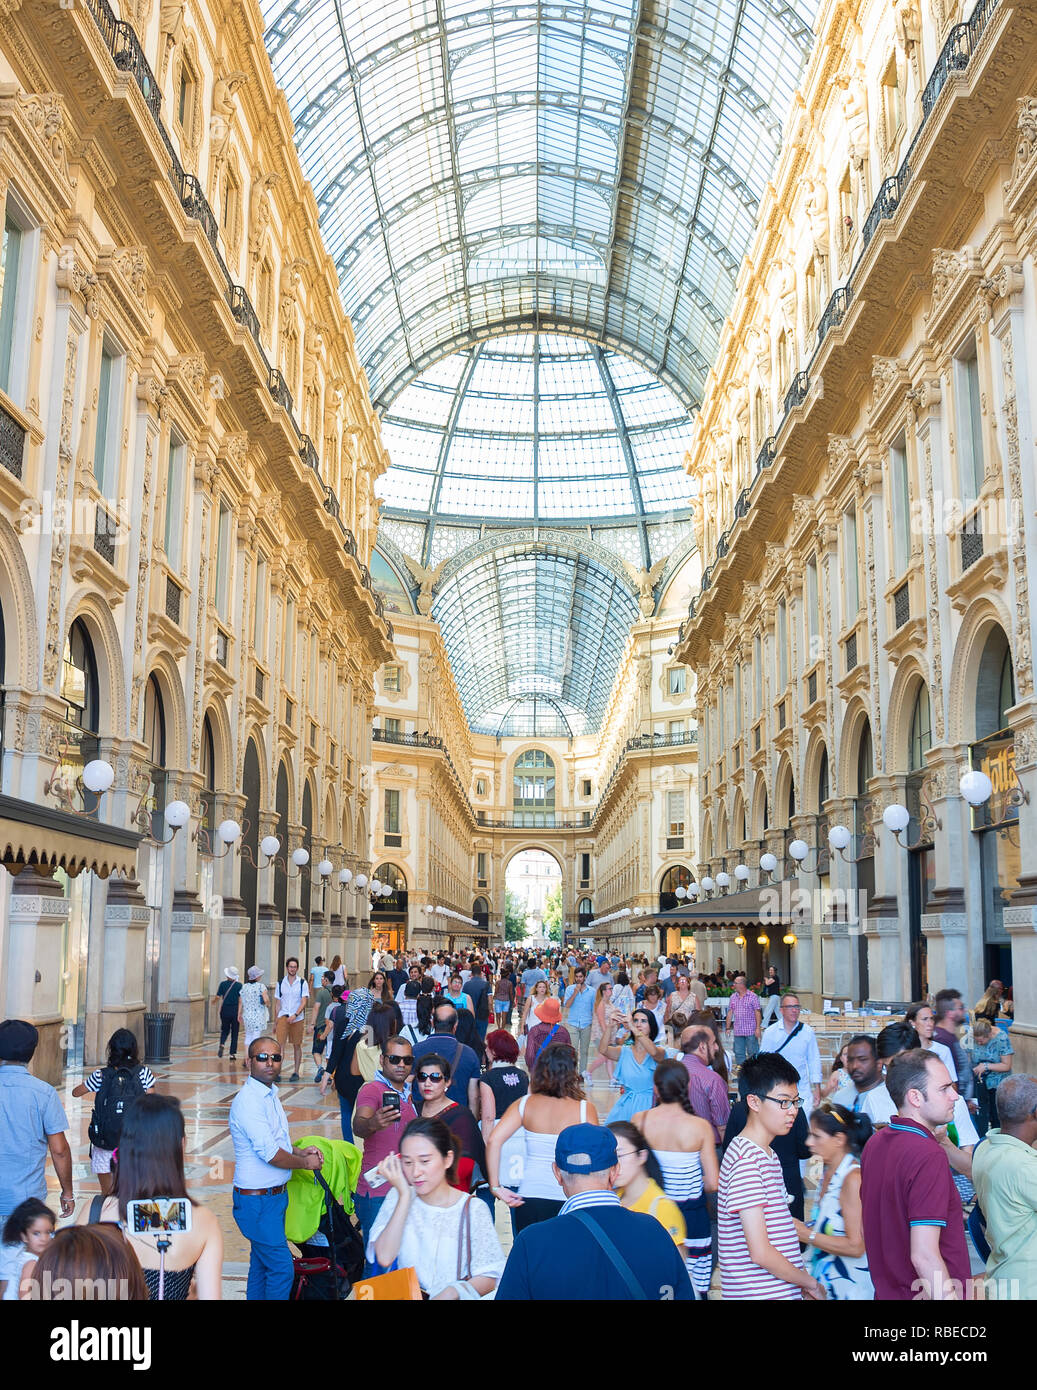 Milano, Italia - 17 agosto 2017: la gente in Galleria Vittorio Emanuele II è una delle più famose aree per lo shopping a Milano. Foto Stock